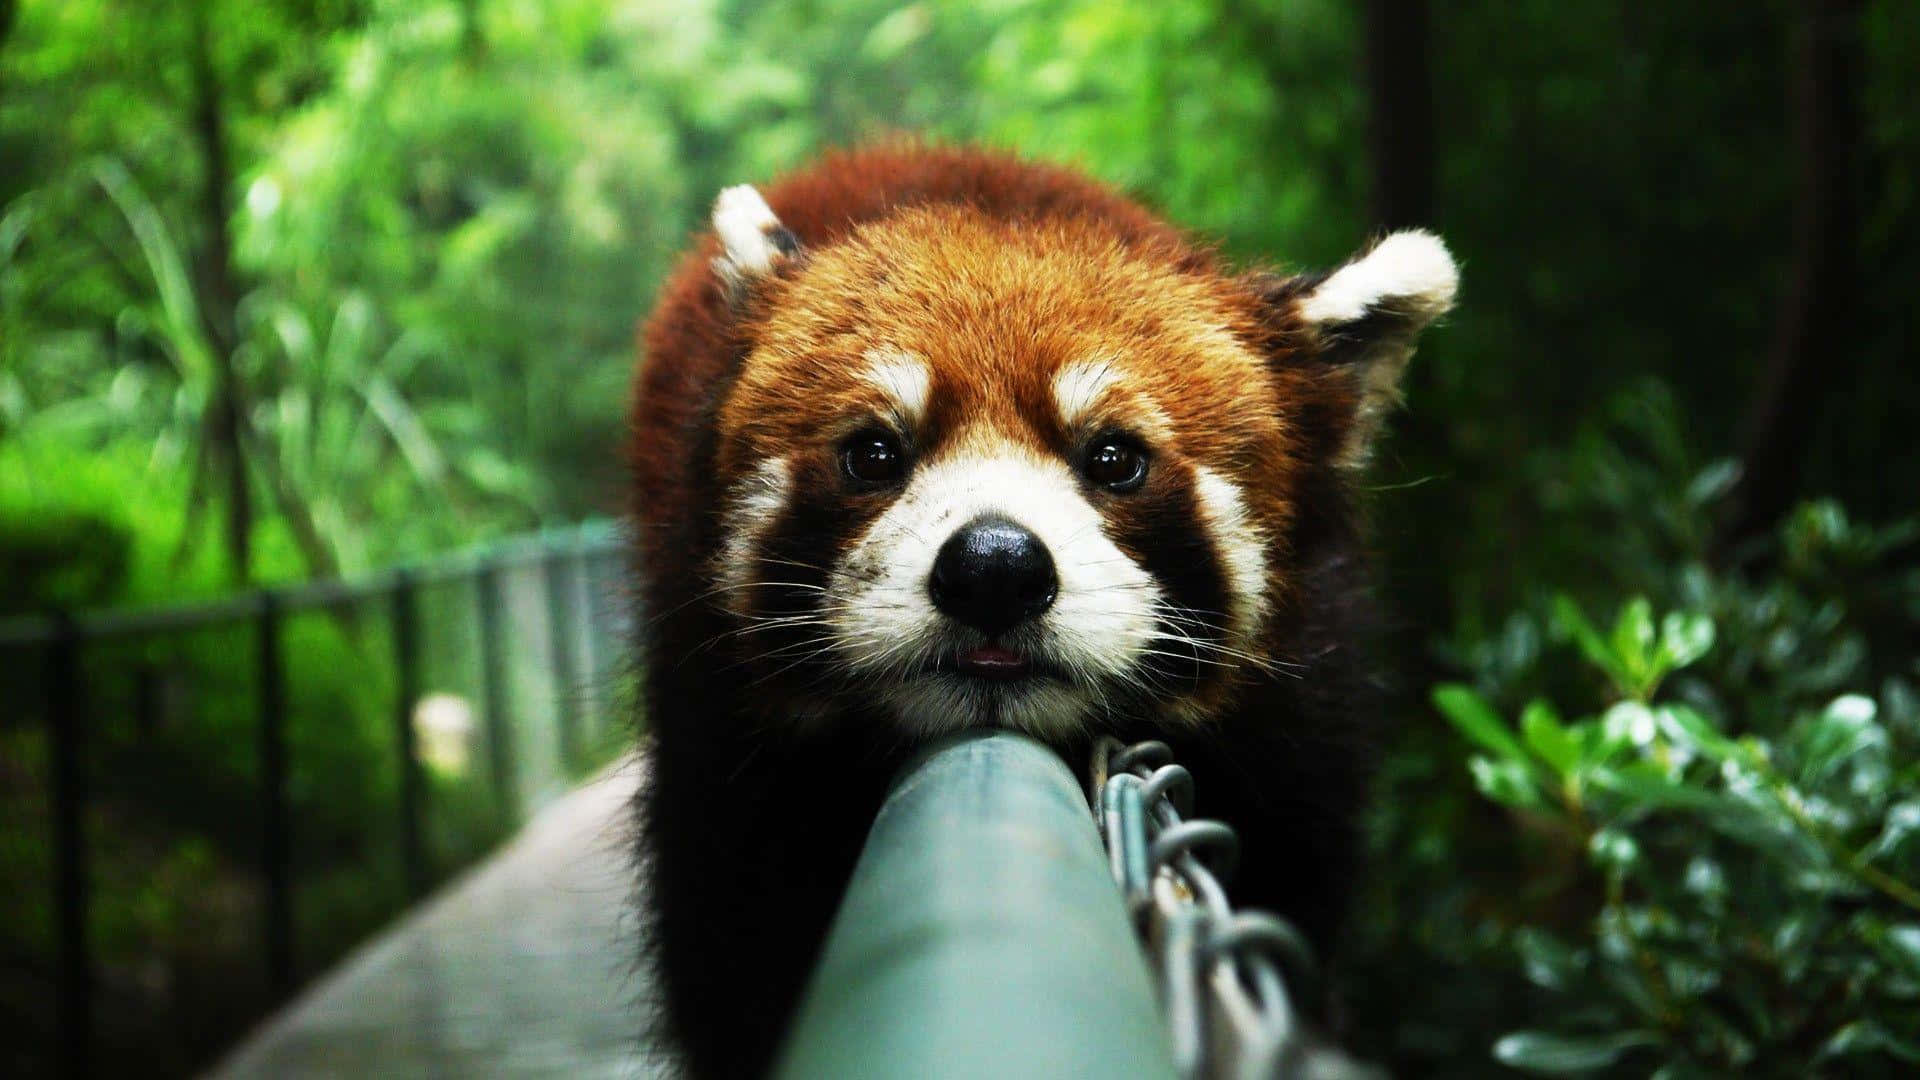 Adorable Red Panda Smiling